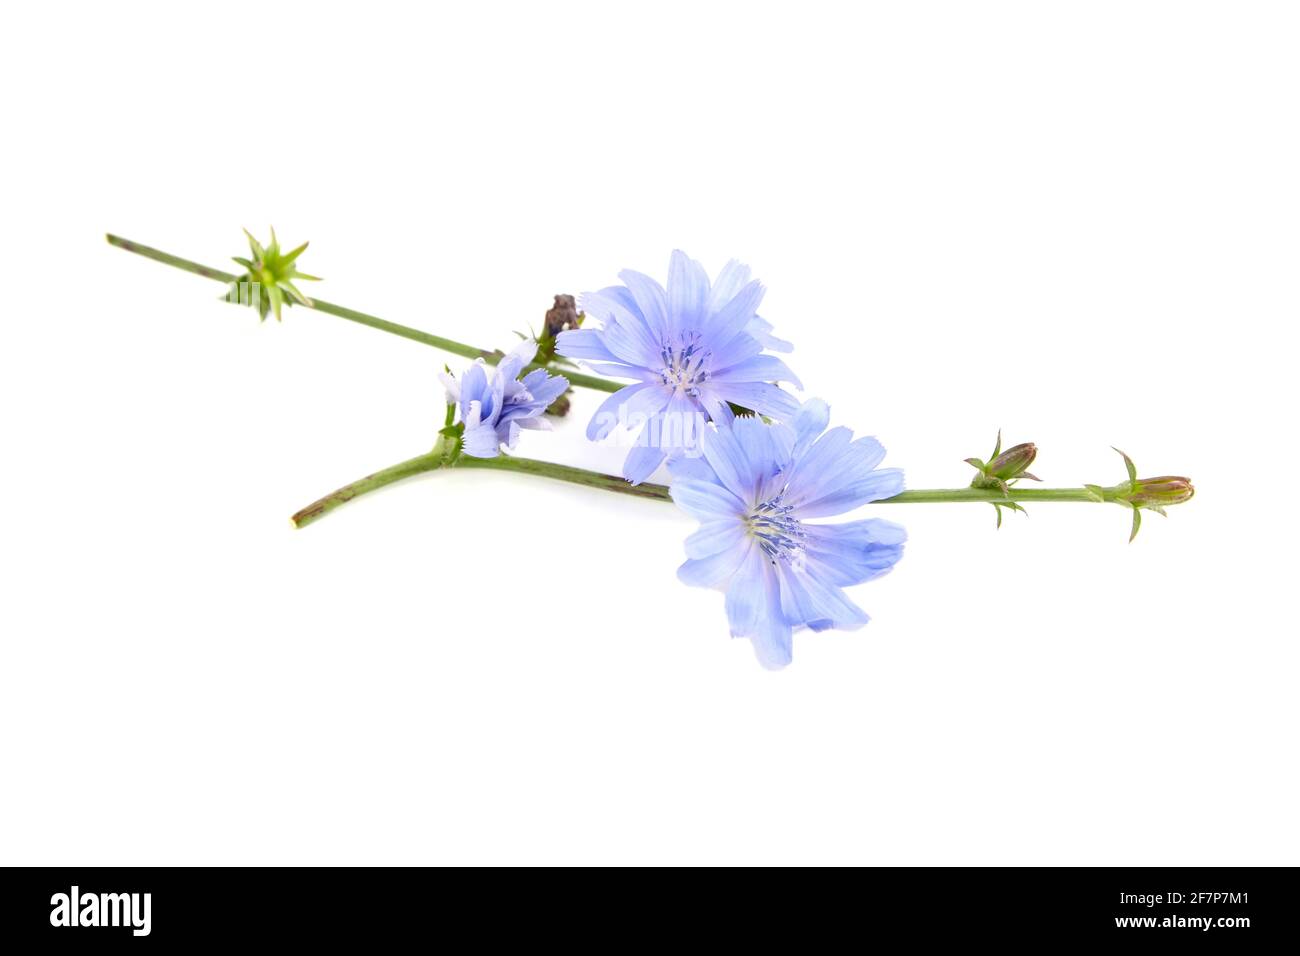 Zichorienblume isoliert auf weißem Hintergrund. Pflanze mit leuchtend blauen Blüten Stockfoto